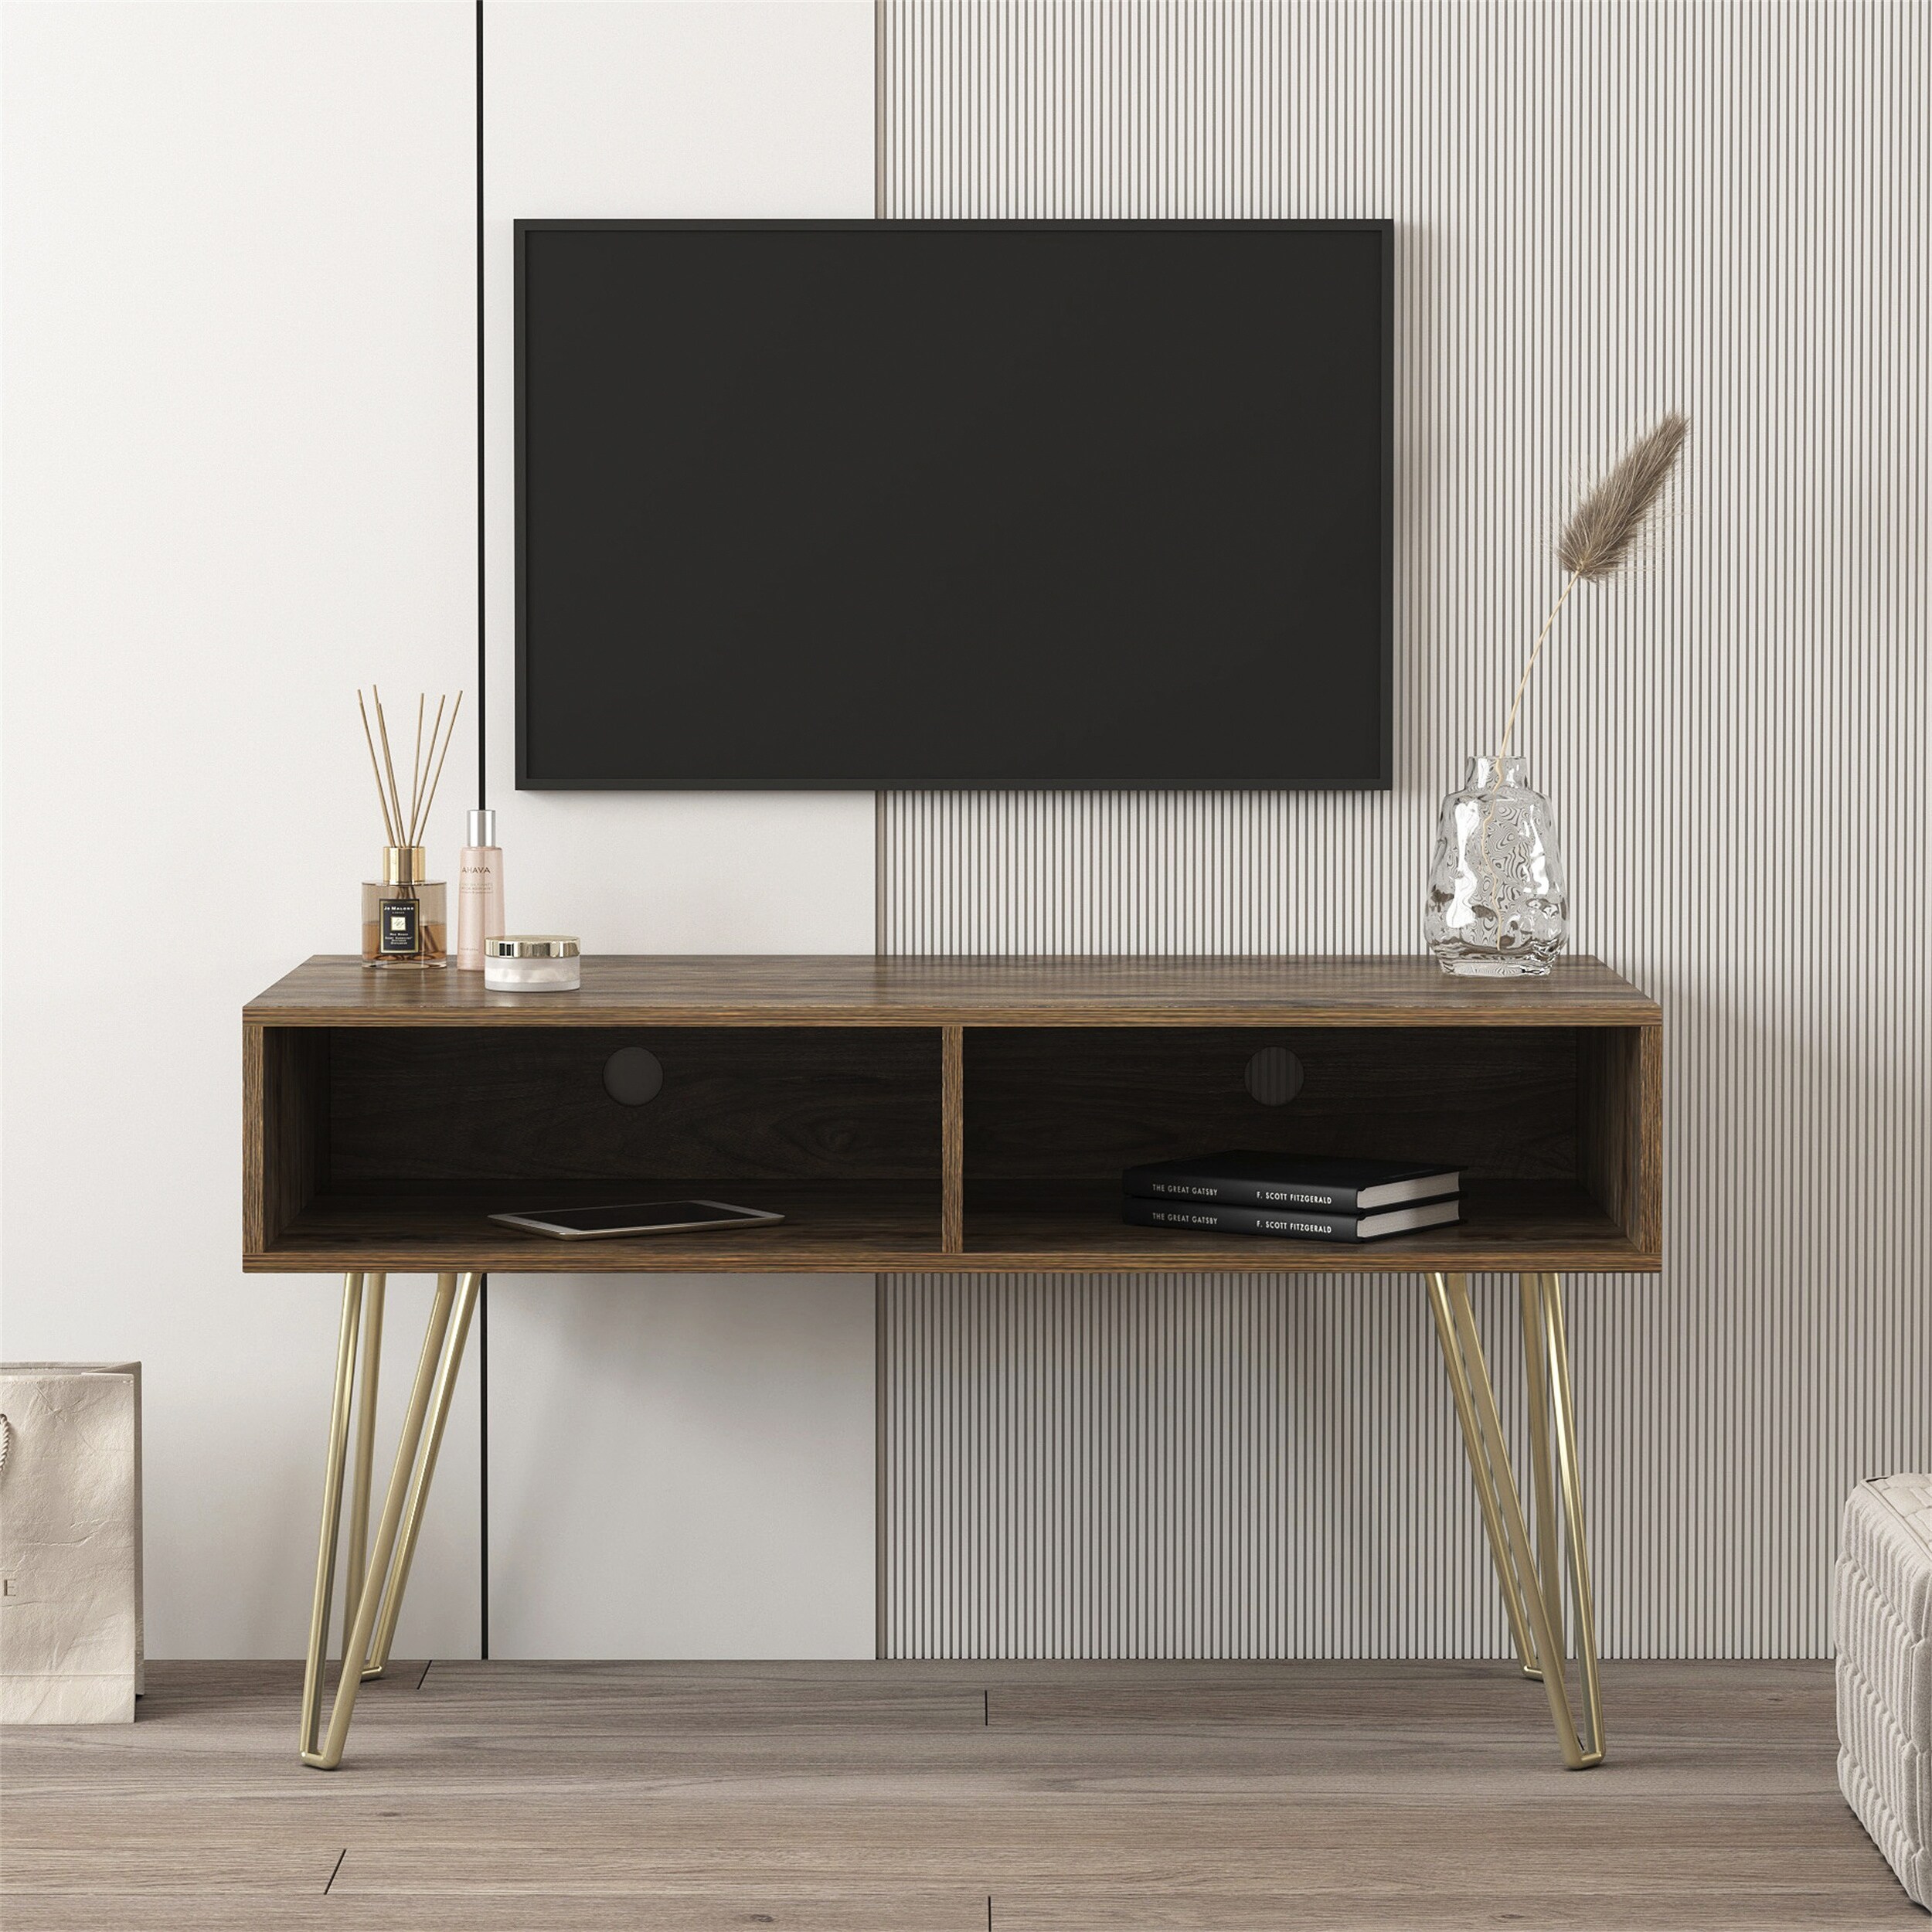 Tv Stand Modern Design Stable Metal Legs With 2 Open Shelves fir Wood